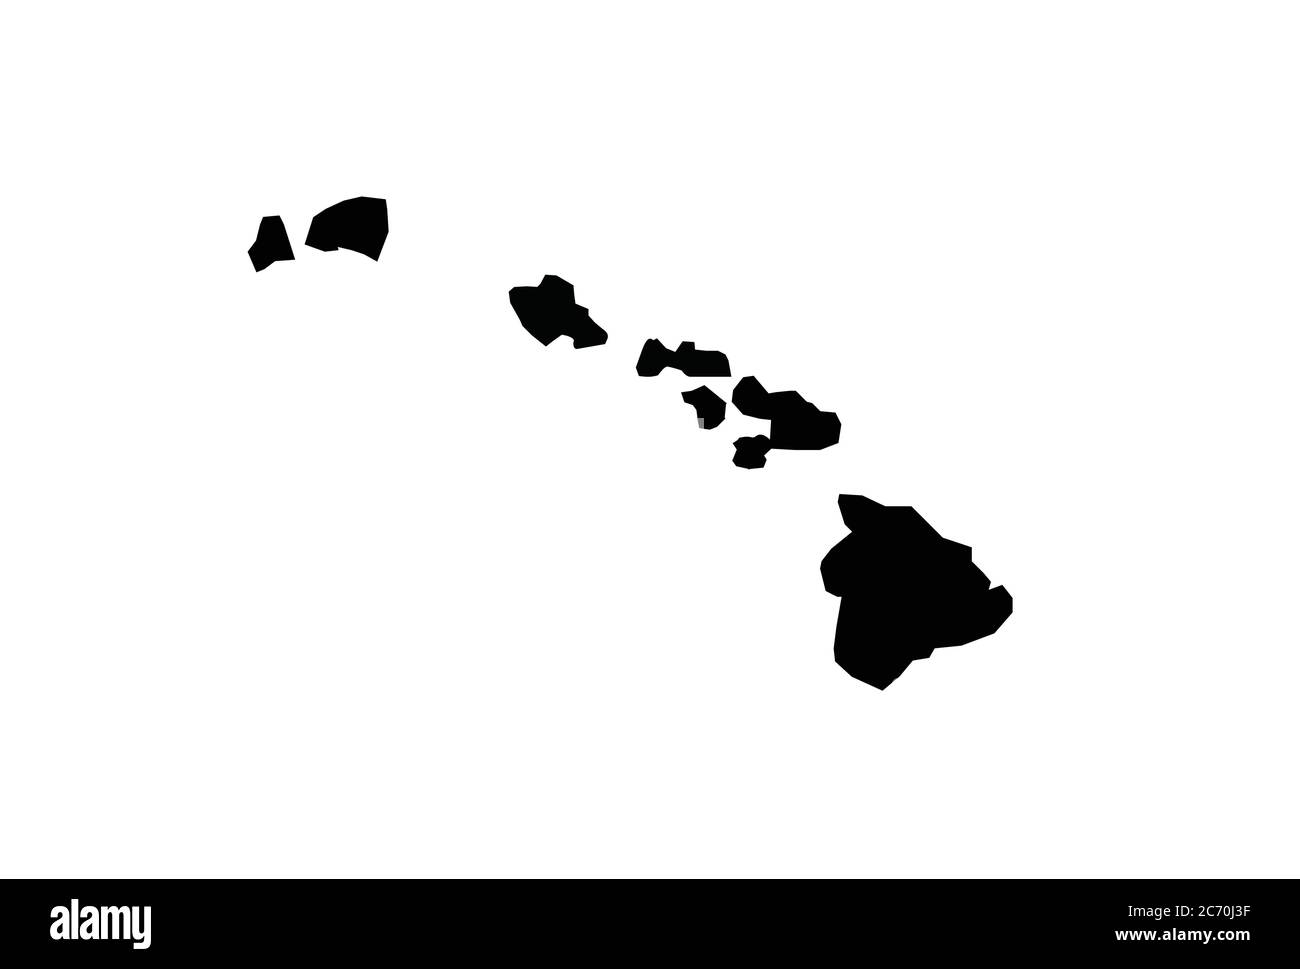 Mappa delle Hawaii - illustrazione vettoriale dell'isola dello stato degli Stati Uniti Illustrazione Vettoriale